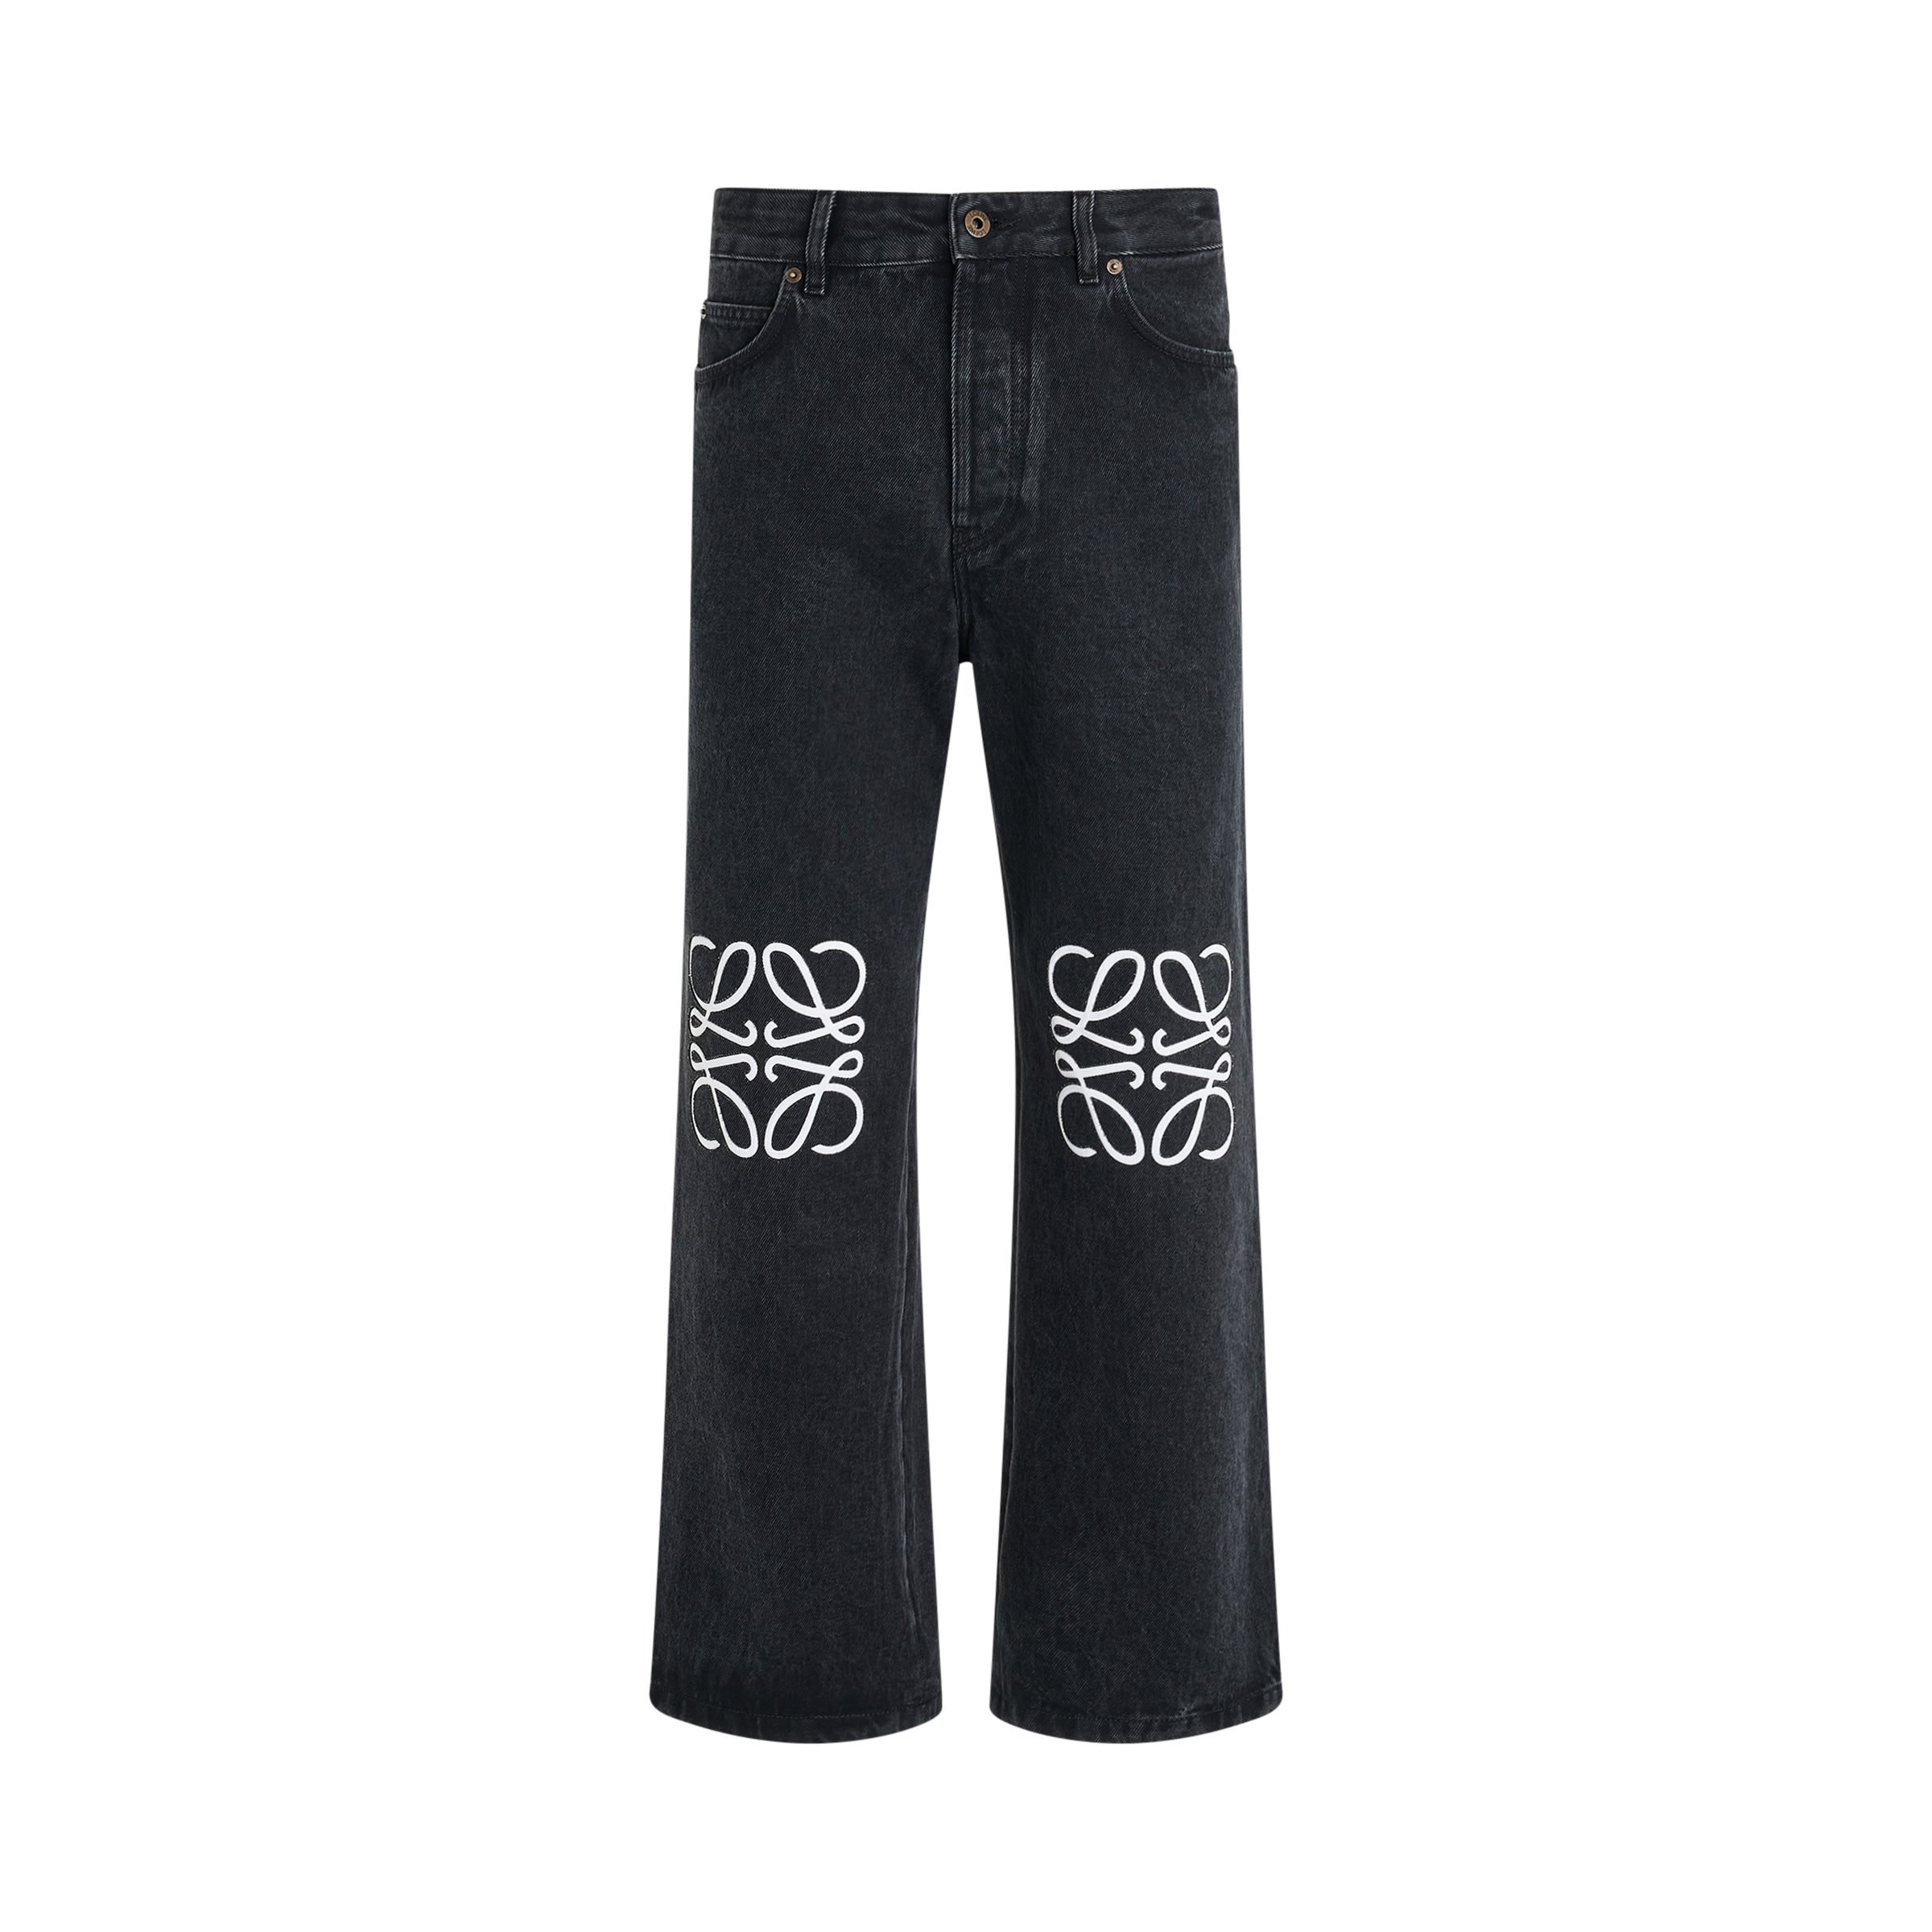 Anagram Baggy Jeans AF in Black Denim